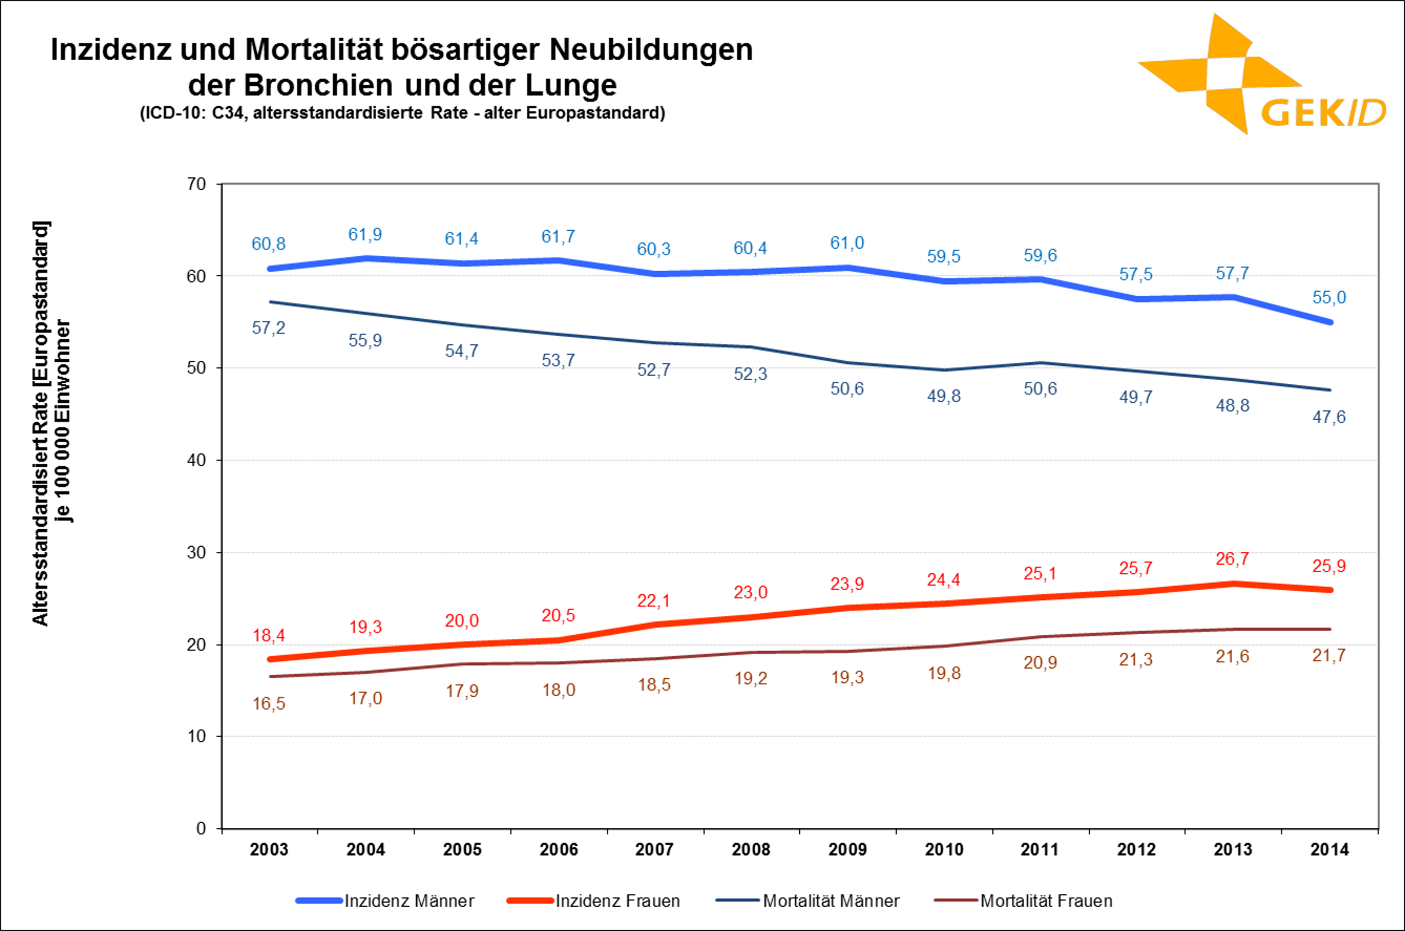 Inzidenz und Mortalität des Lungenkarzinoms in Deutschland (altersstandardisierte Rate) 1